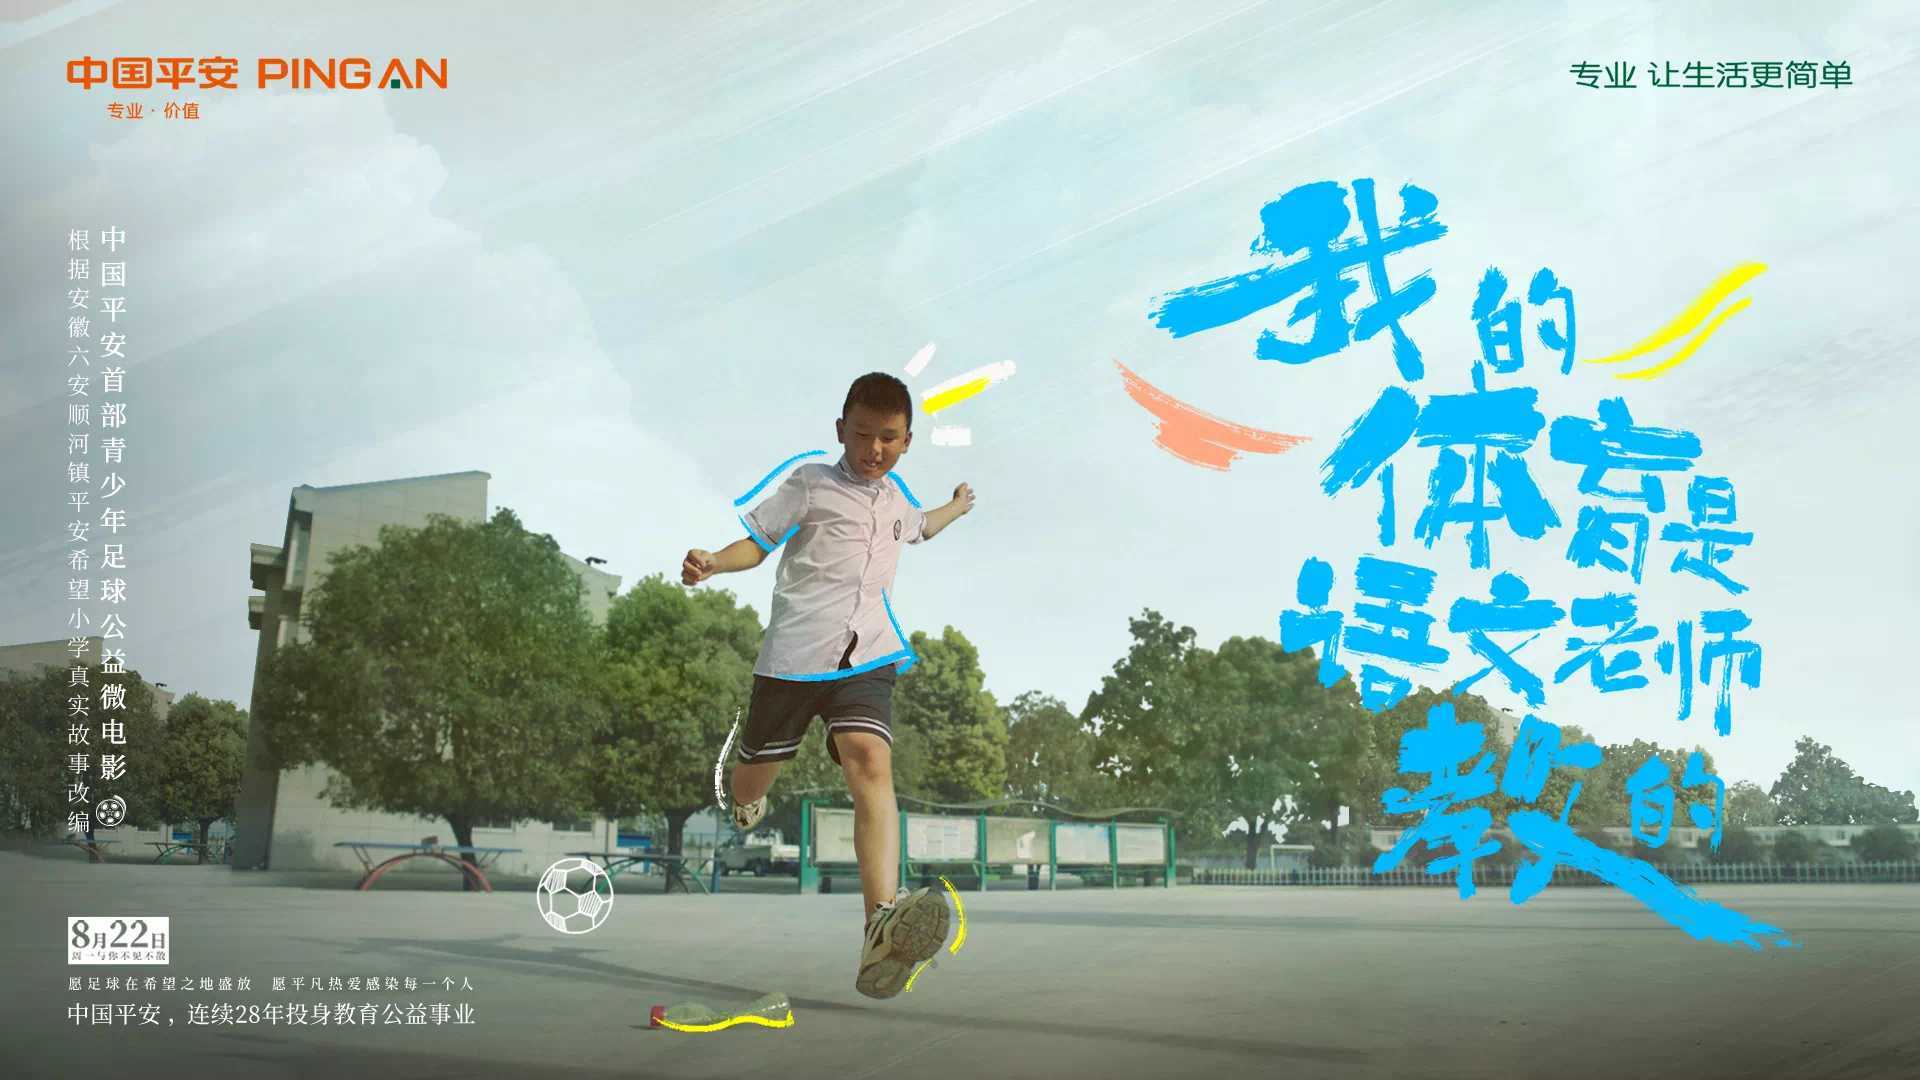 我的体育是语文老师教的｜中国平安首部青少年足球公益微电影